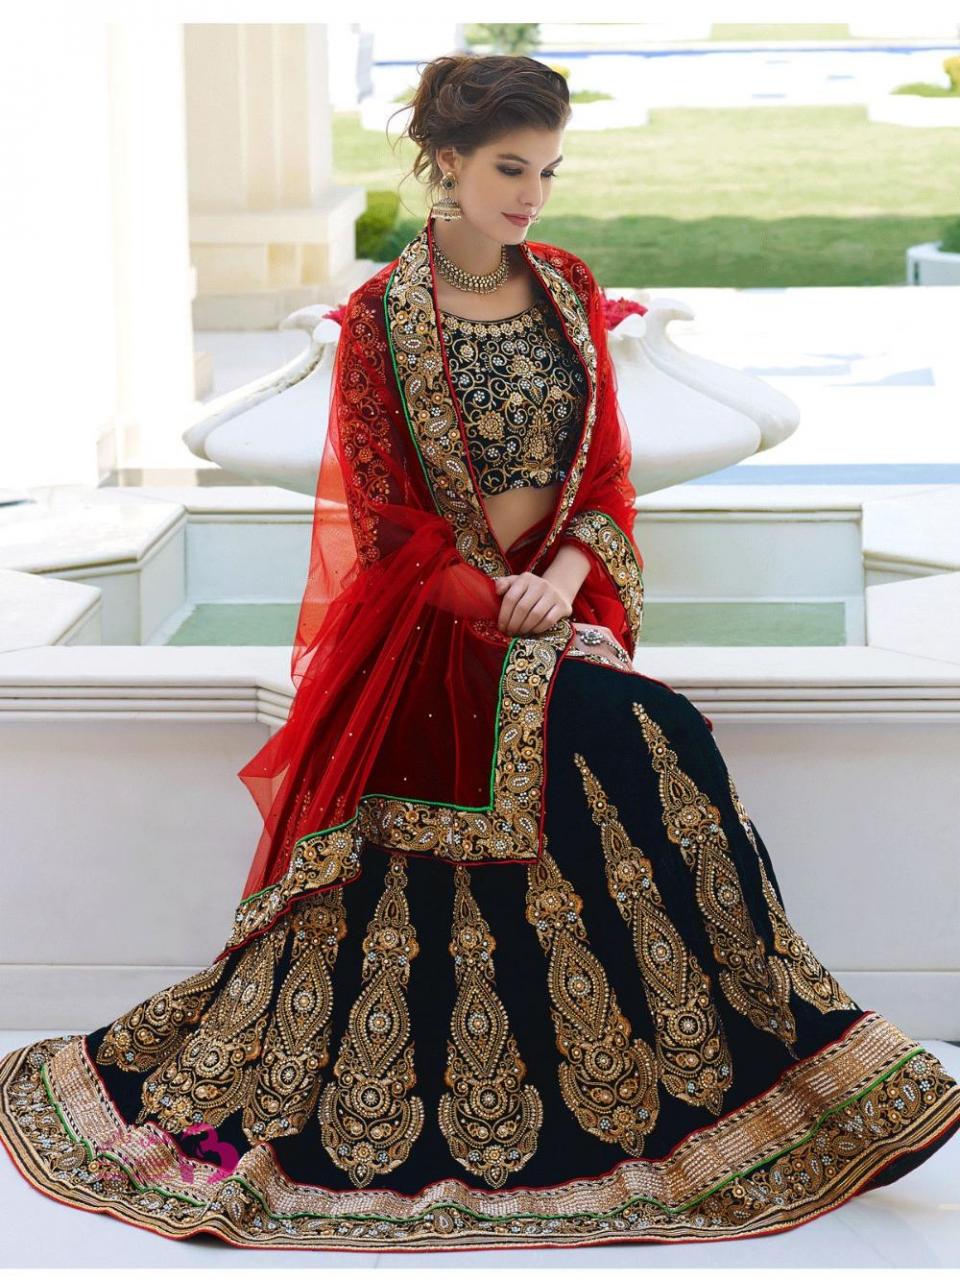 فساتين هندية فخمة , السارى الهندى من اقدم الفساتين الهندية - الحبيب للحبيب